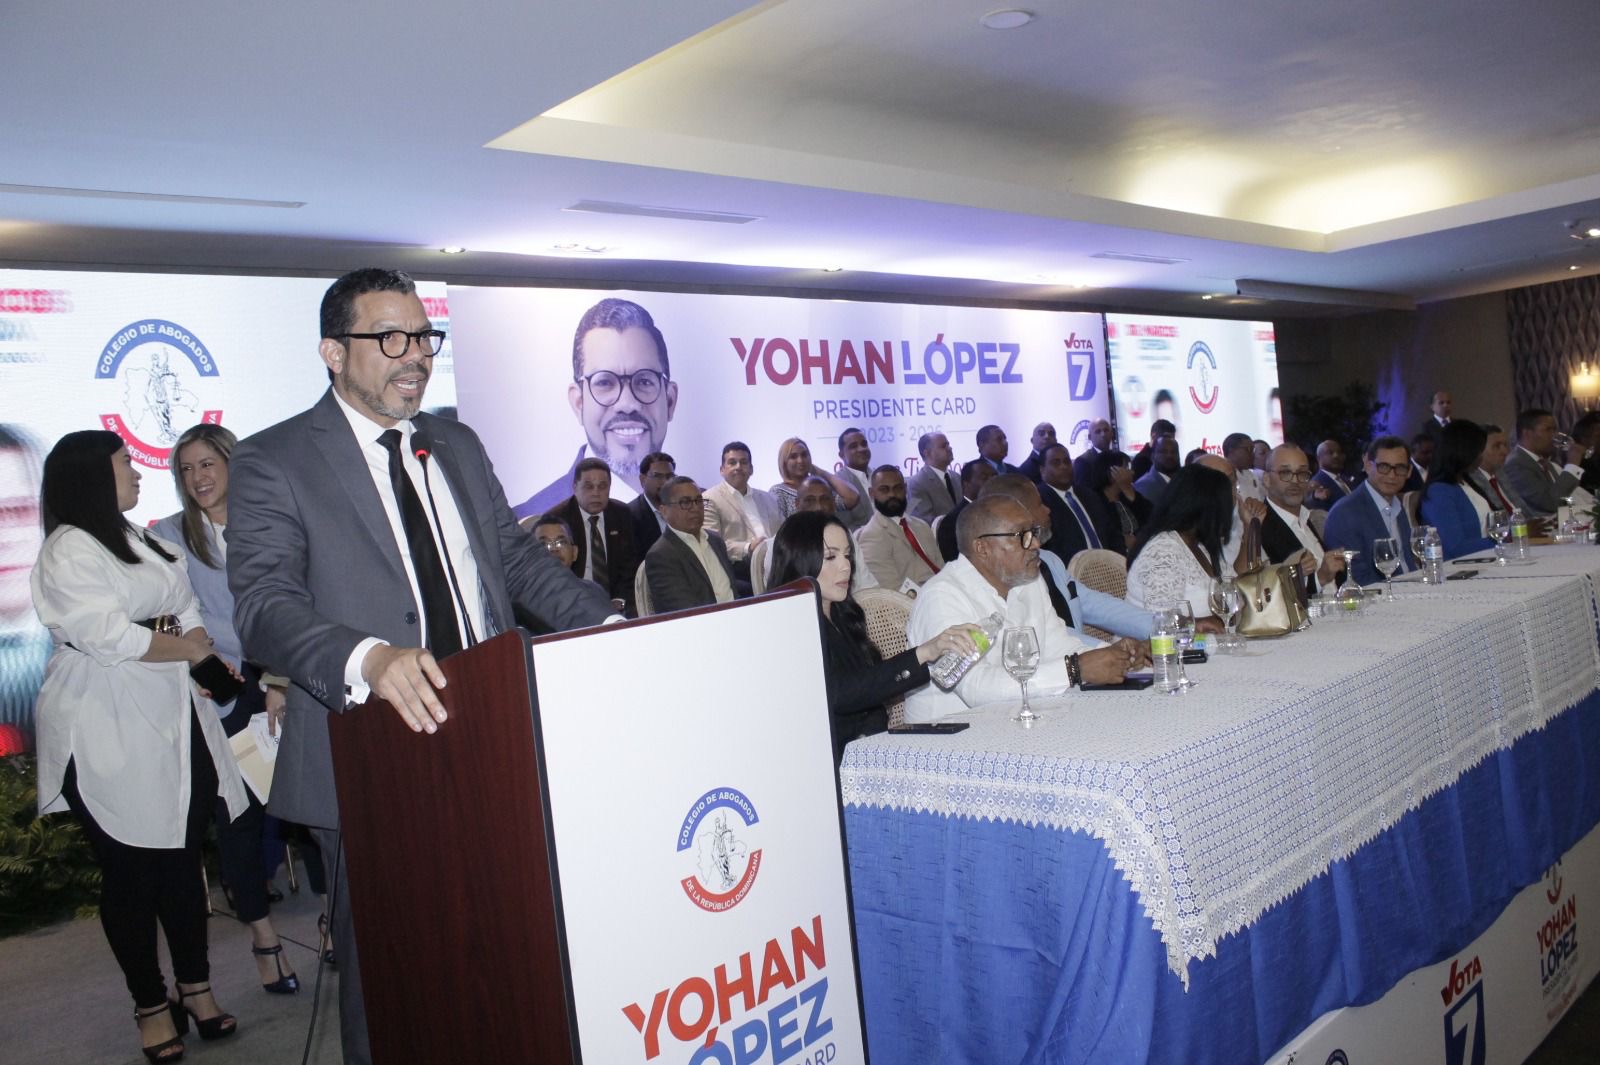 Yohan López candidato a la presidencia del CARD presenta su propuesta en un masivo acto*